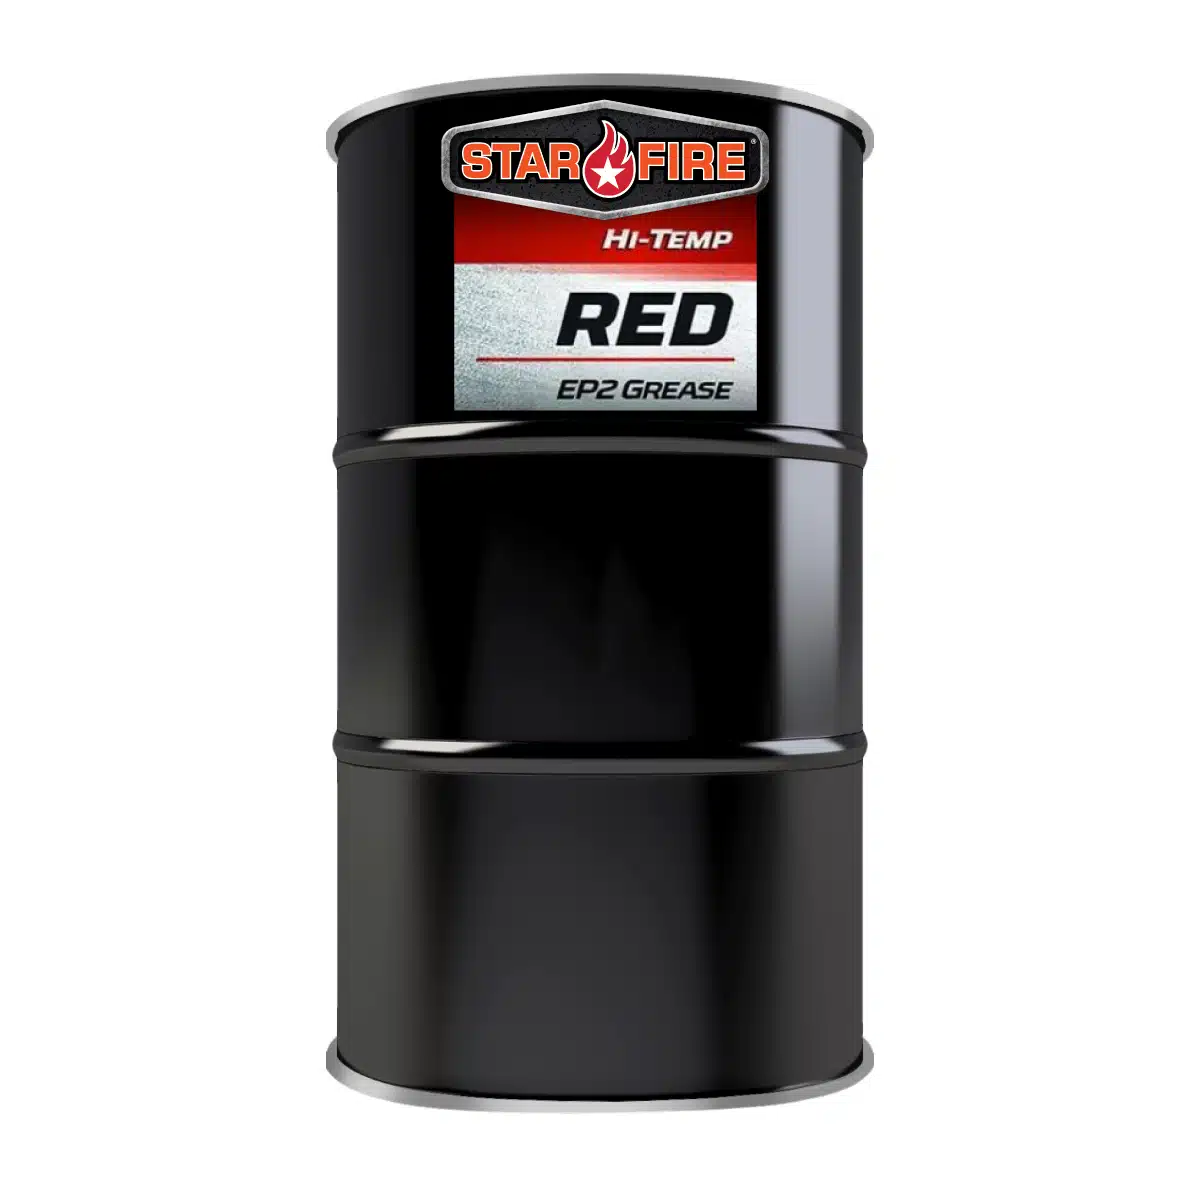 Hi-Temp Grease EP2 Red 120lb keg